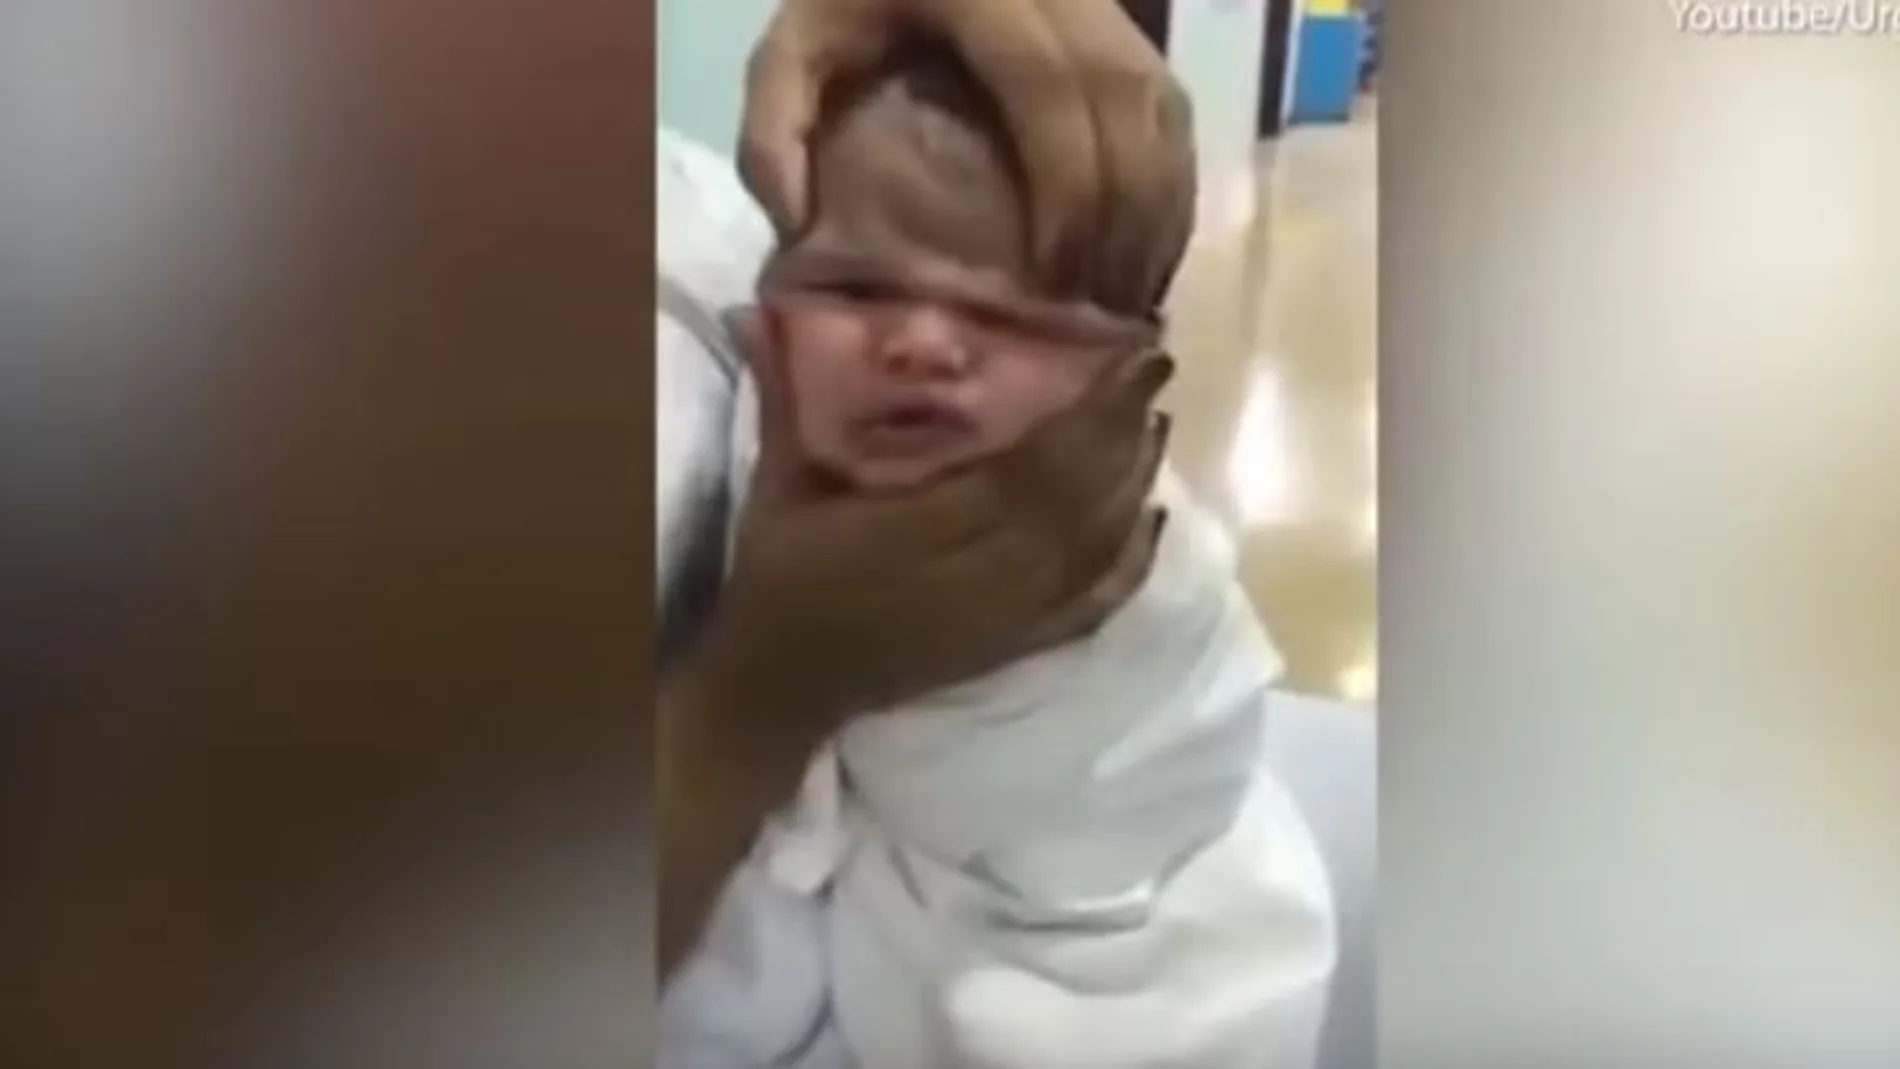 Momento en el que aprietan la cara de un bebé para arrugársela y reírse de su aspecto